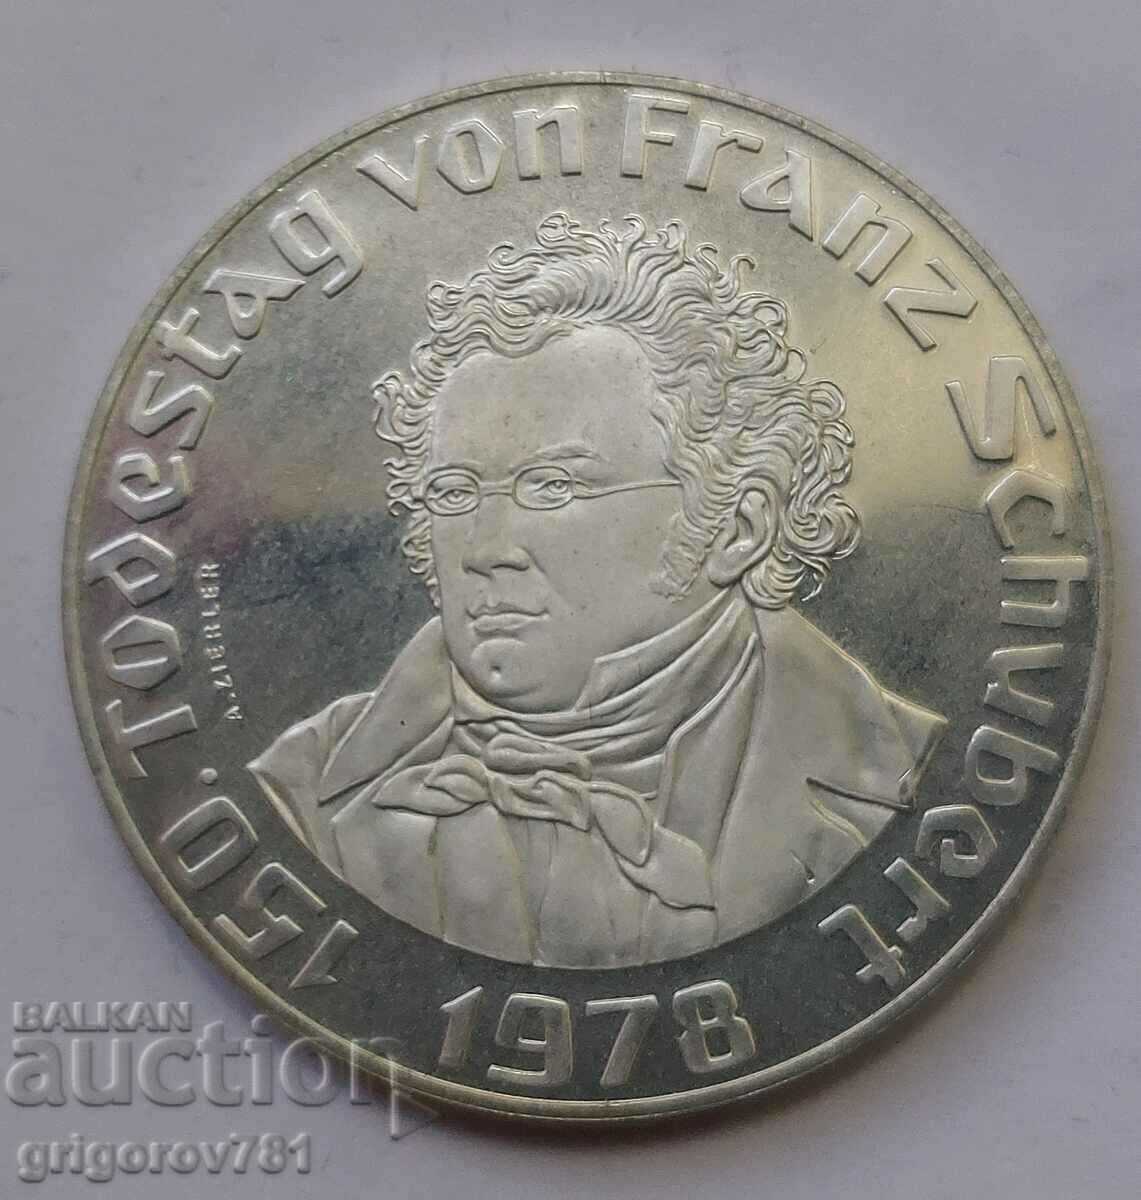 Ασημένιο 50 σελίνια Αυστρία 1978 Proof - Ασημένιο νόμισμα #23